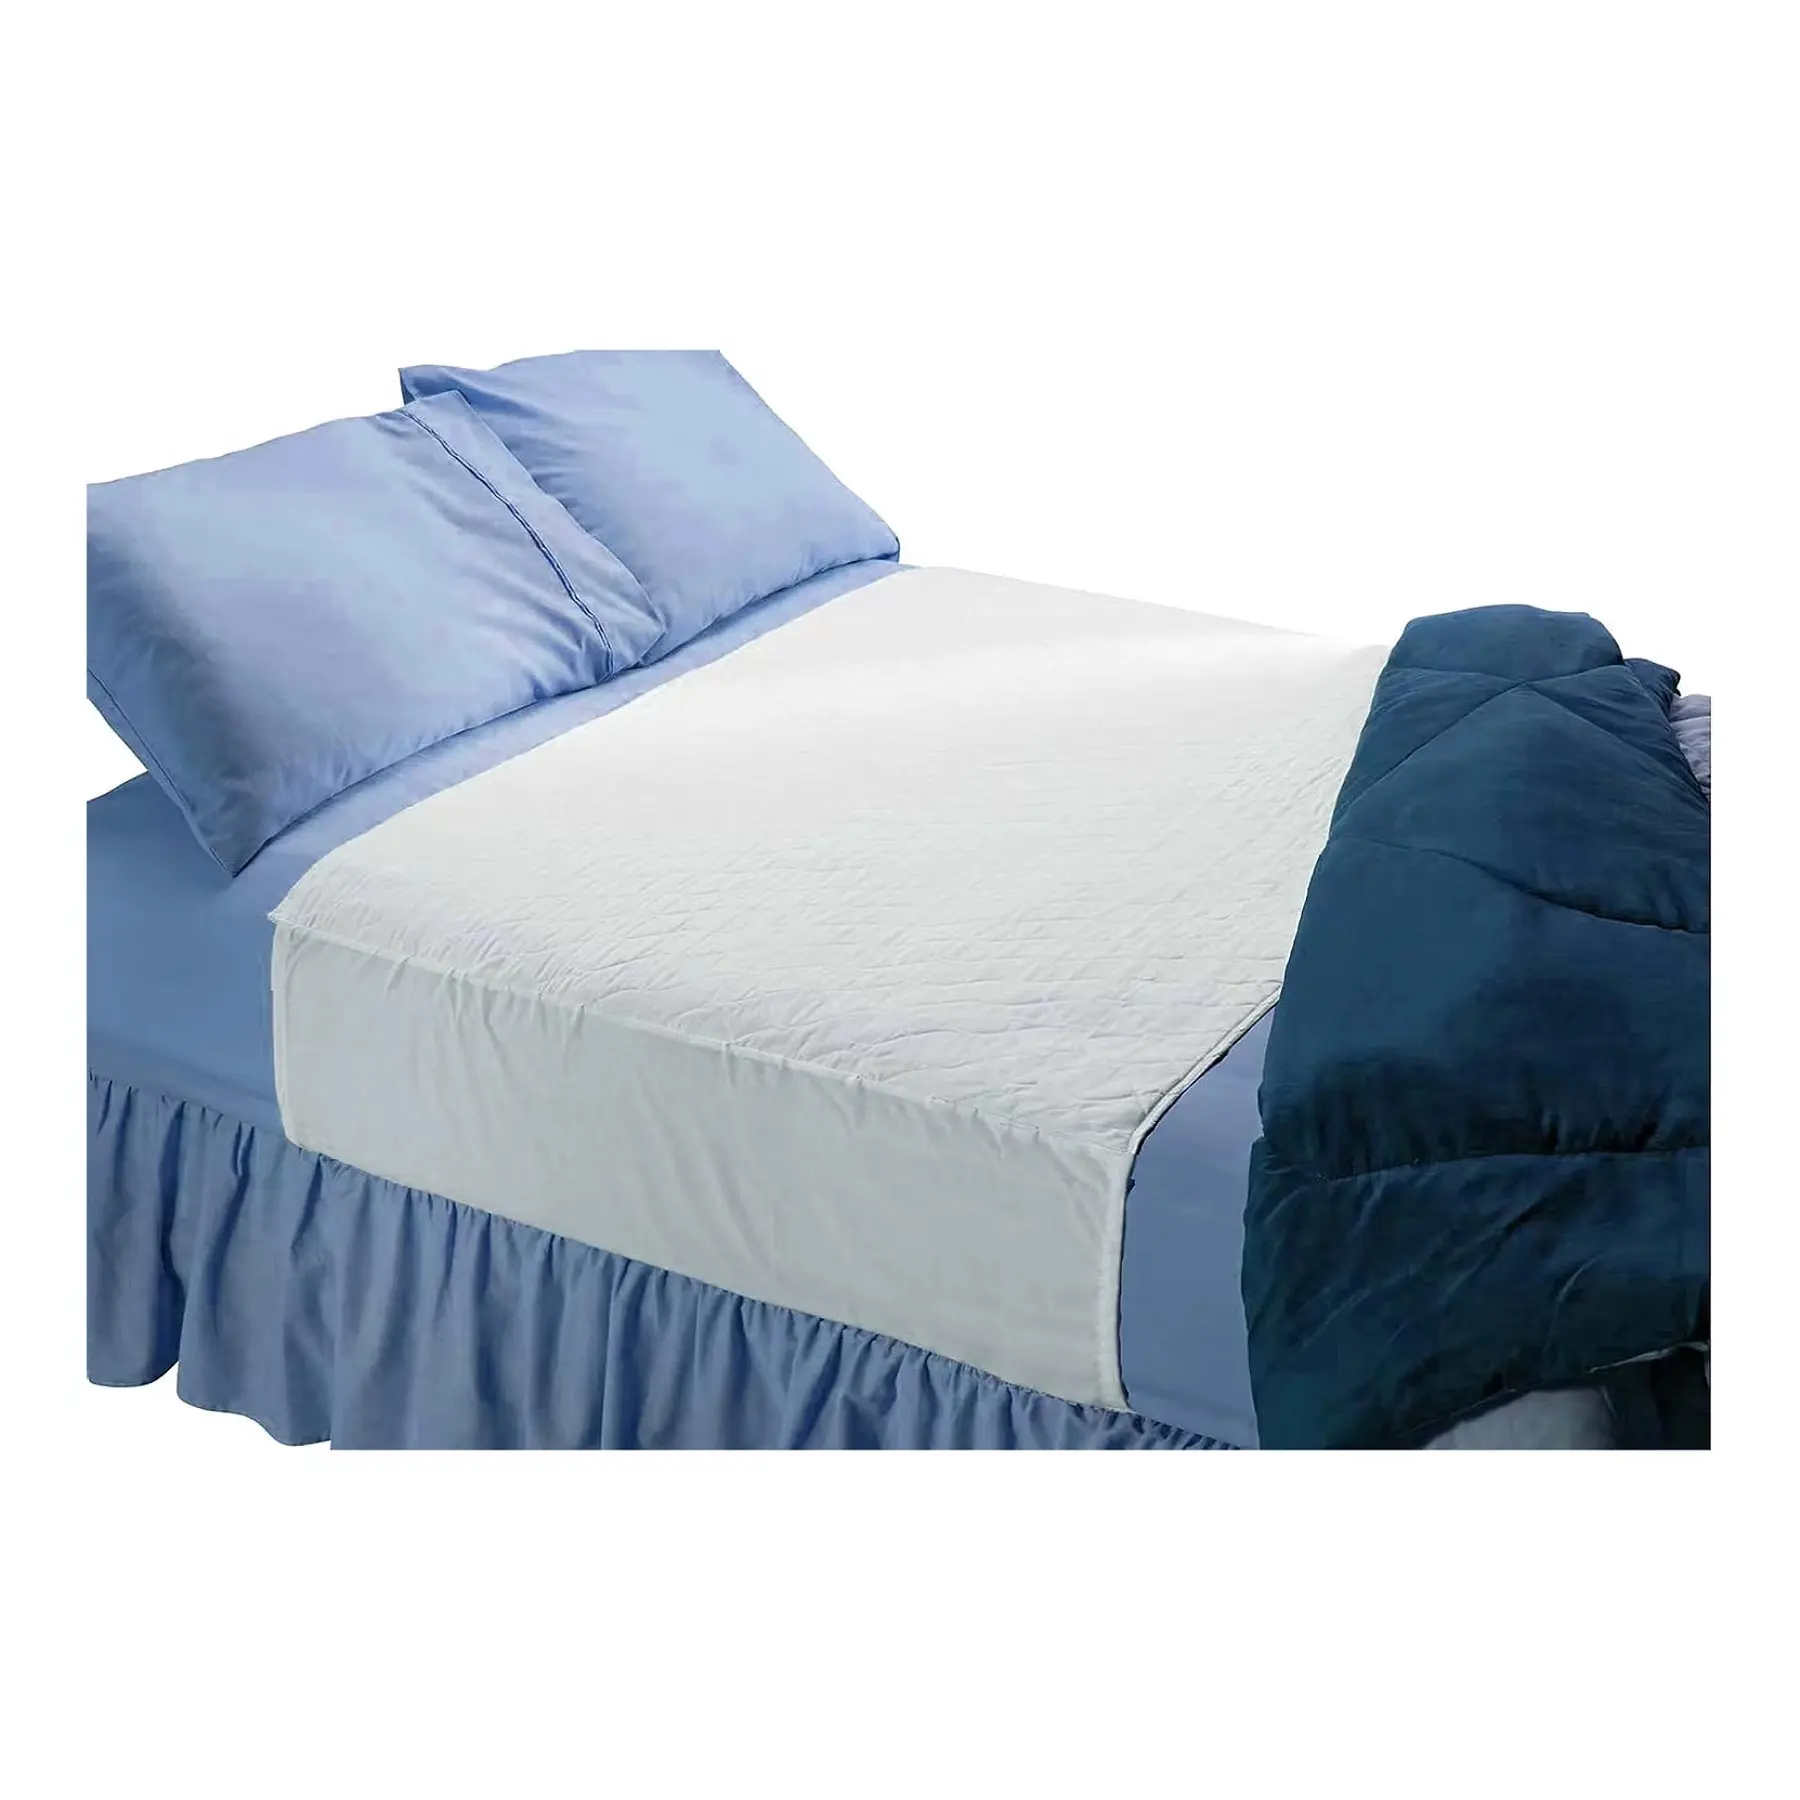 Coussin de lit imperméable absorbant avec côtés repliables Lavable Tuck in Underpad Protection contre l'incontinence pour animal de compagnie adulte